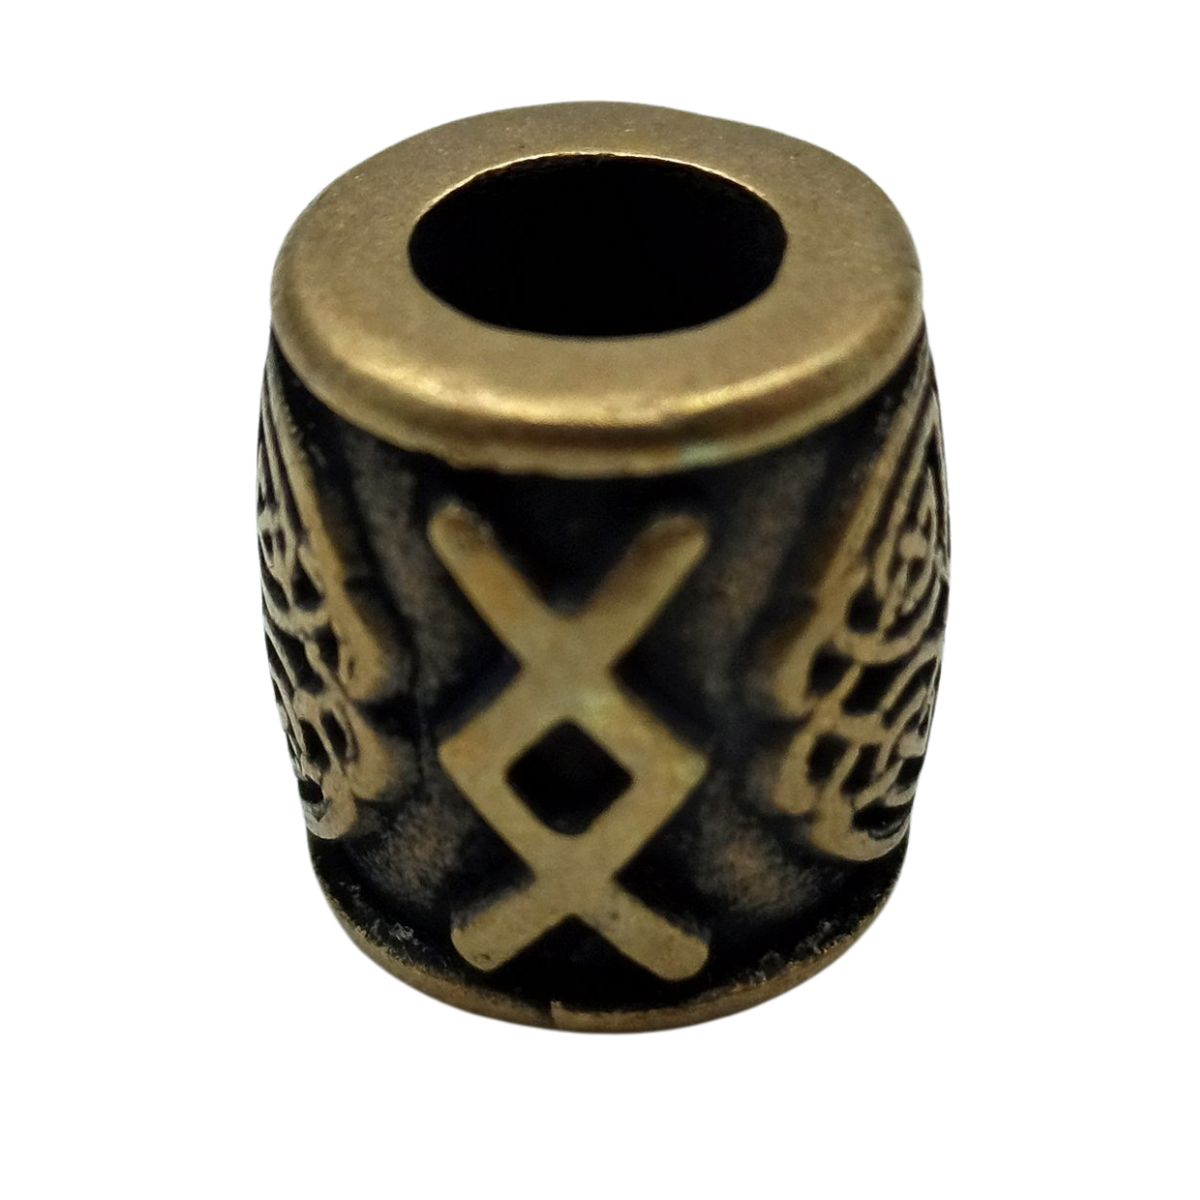 Ingwaz rune bronze bead